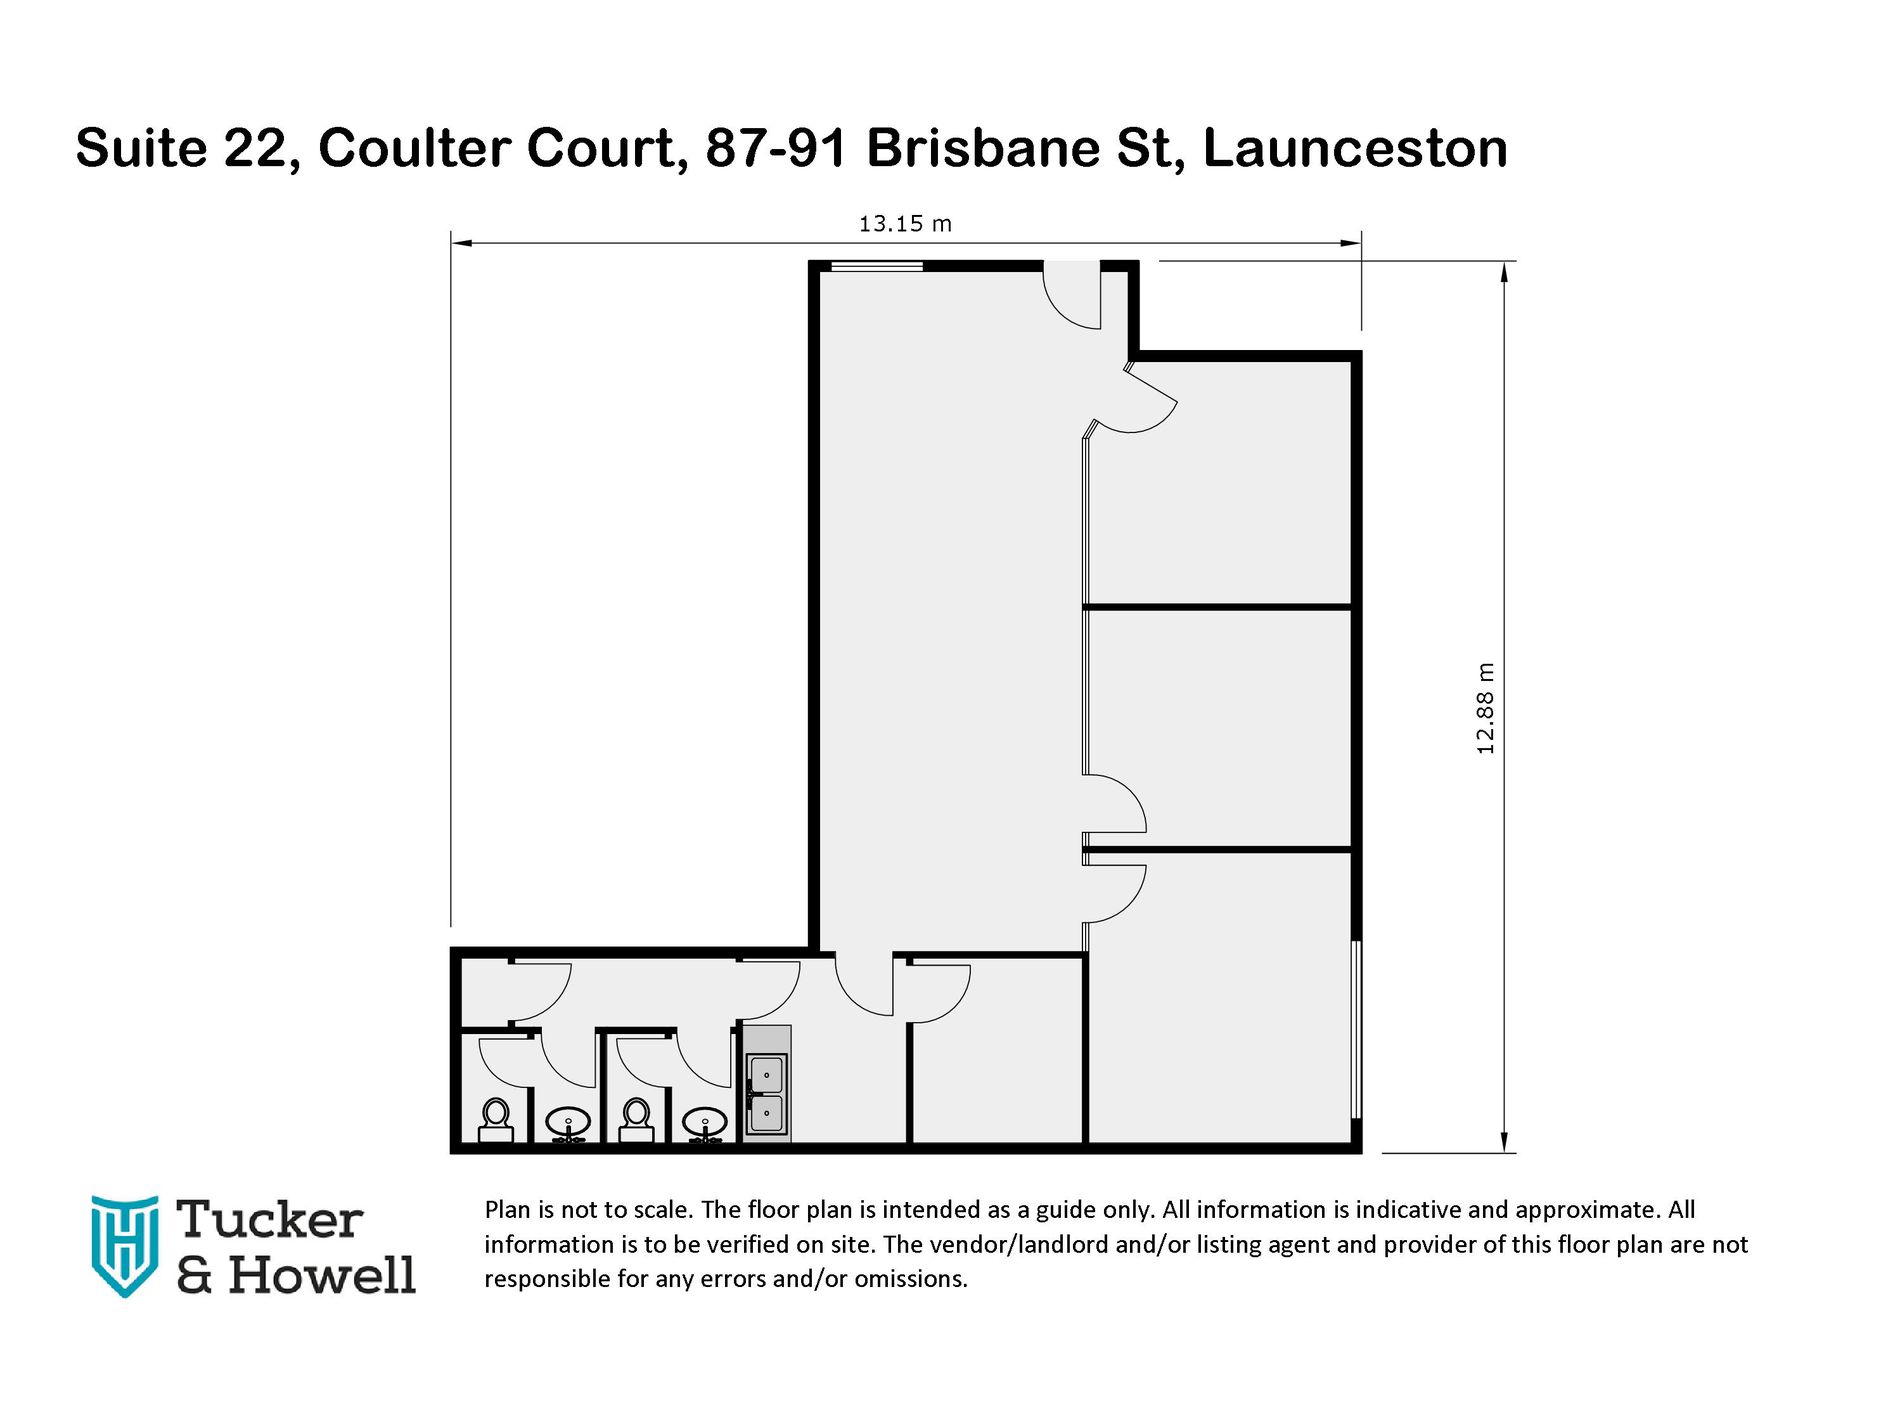 Suite 22 / 87-91 Brisbane Street, Launceston